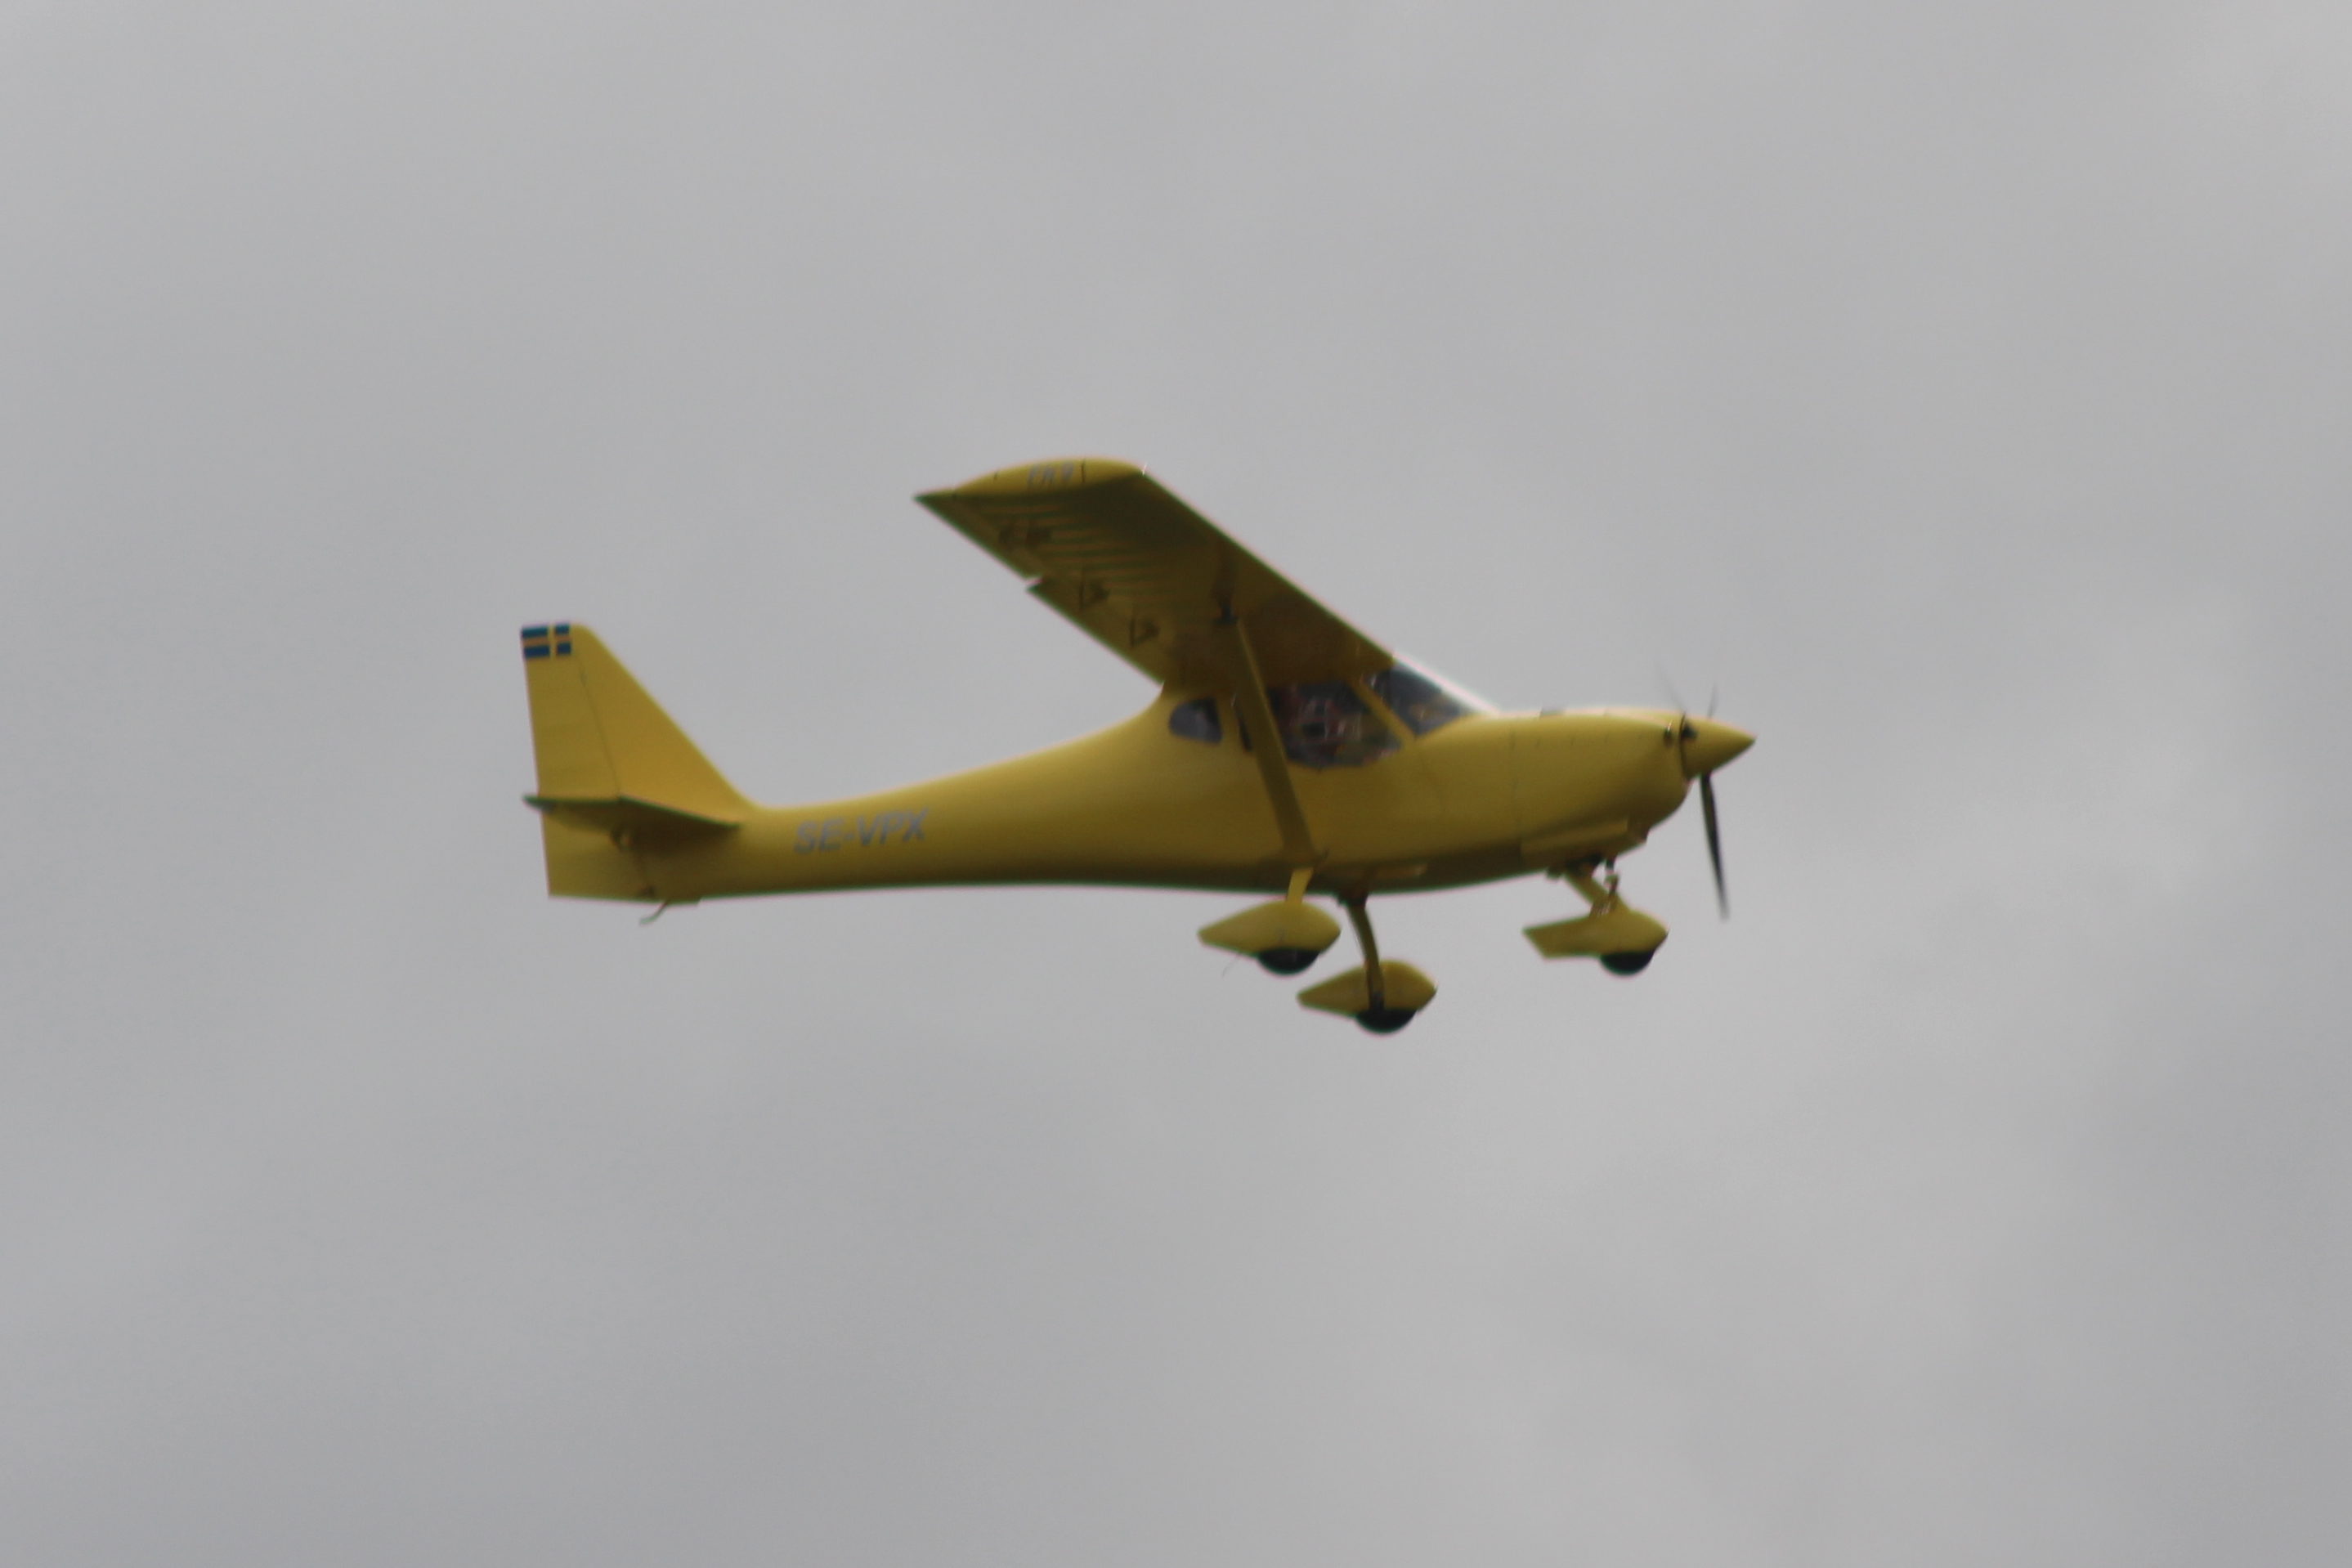 SE-VPX, B&F FK 9 MK IV, tysktillverkat ultralättflygplan. Väldigt gult.